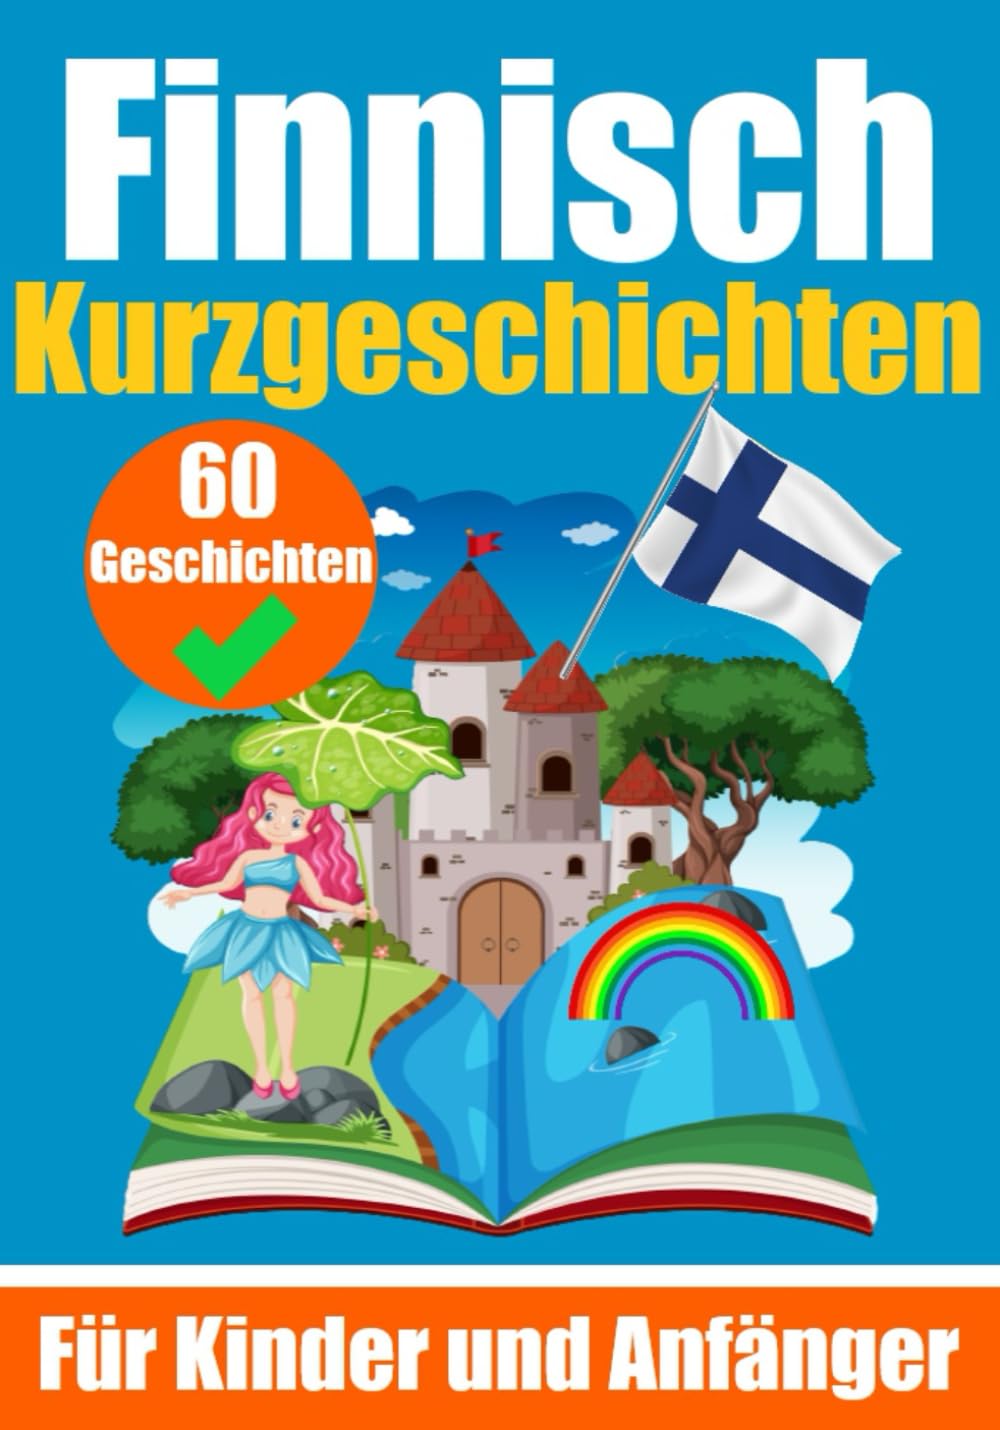 60 Kurzgeschichten auf Finnisch | Ein zweisprachiges Buch auf Deutsch und Finnisch